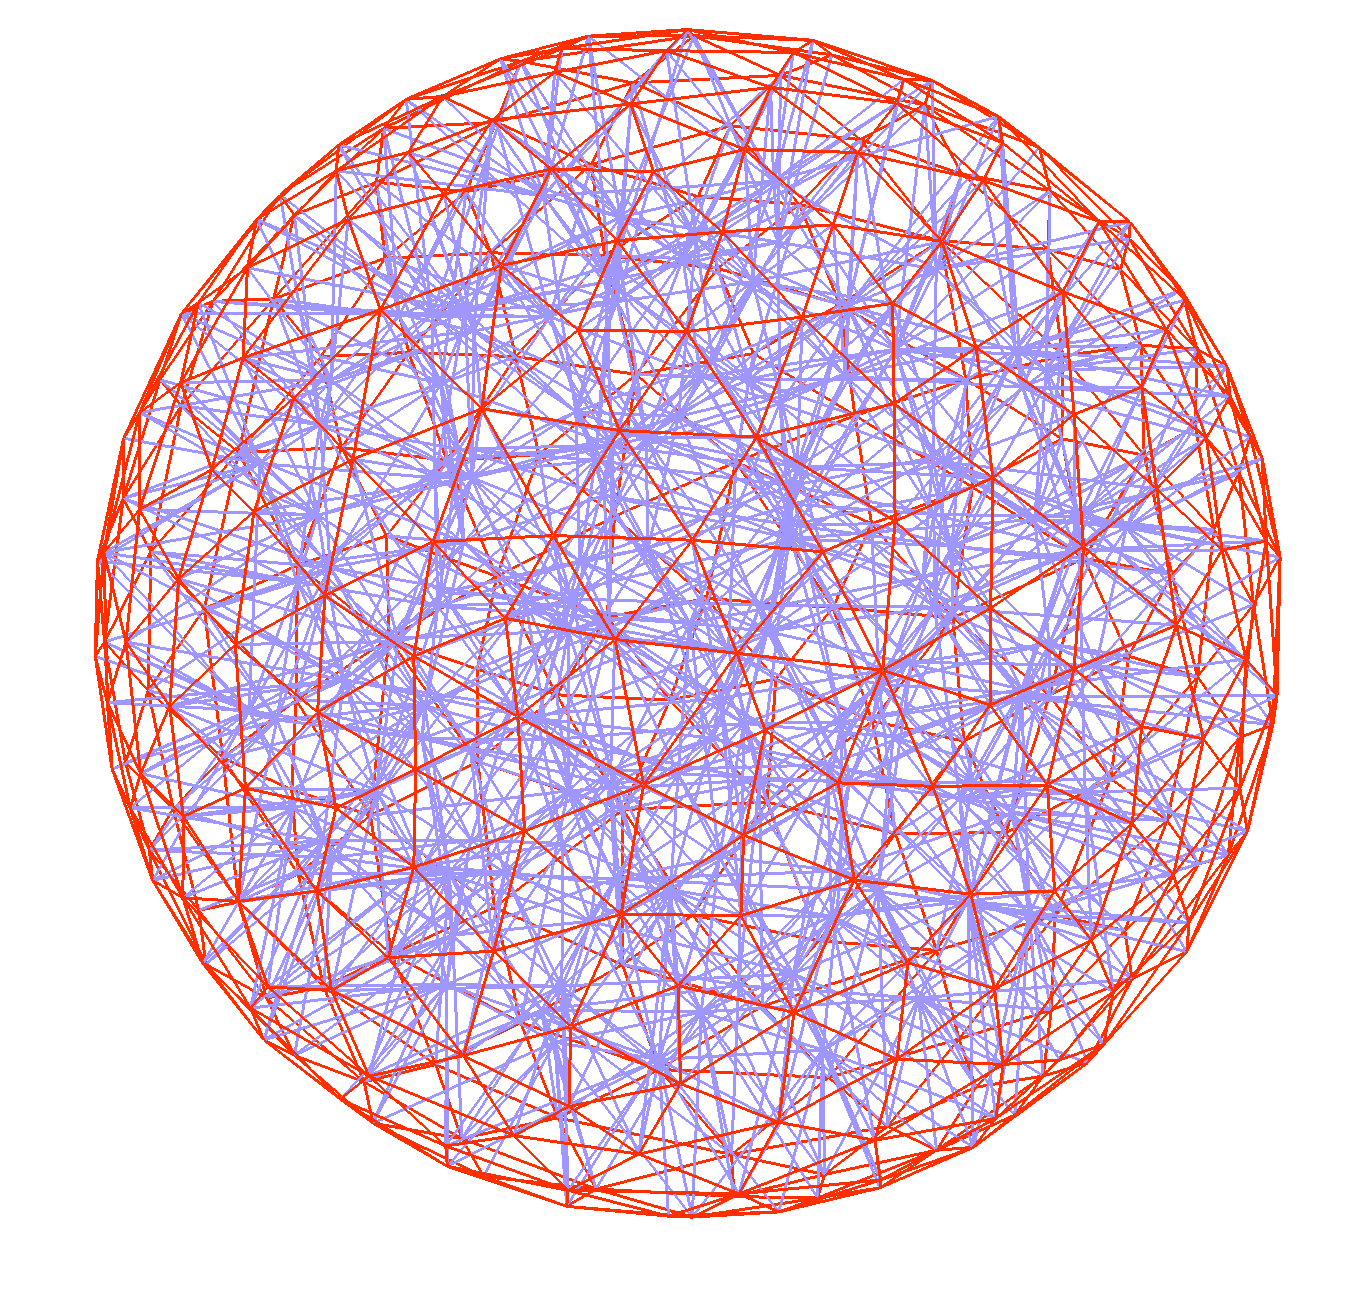 Sphere_1675 mesh image